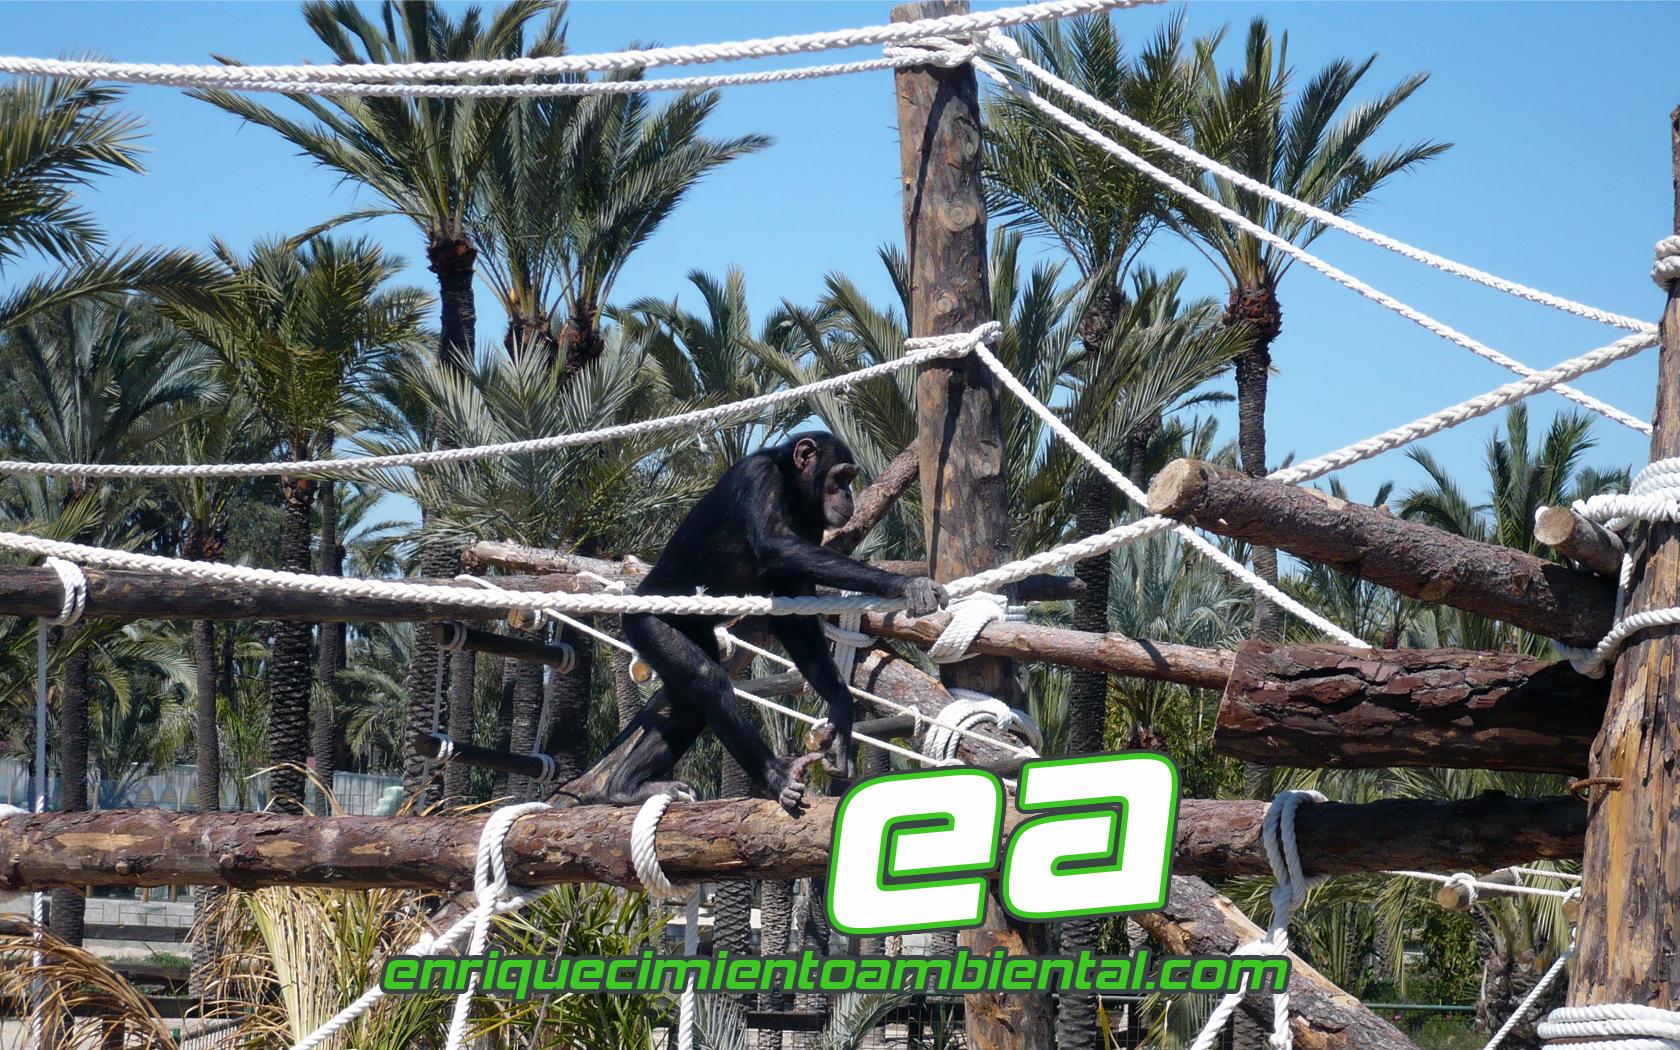 La isla de los chimpancés. Nuevas instalaciones en Rio Safari Elche